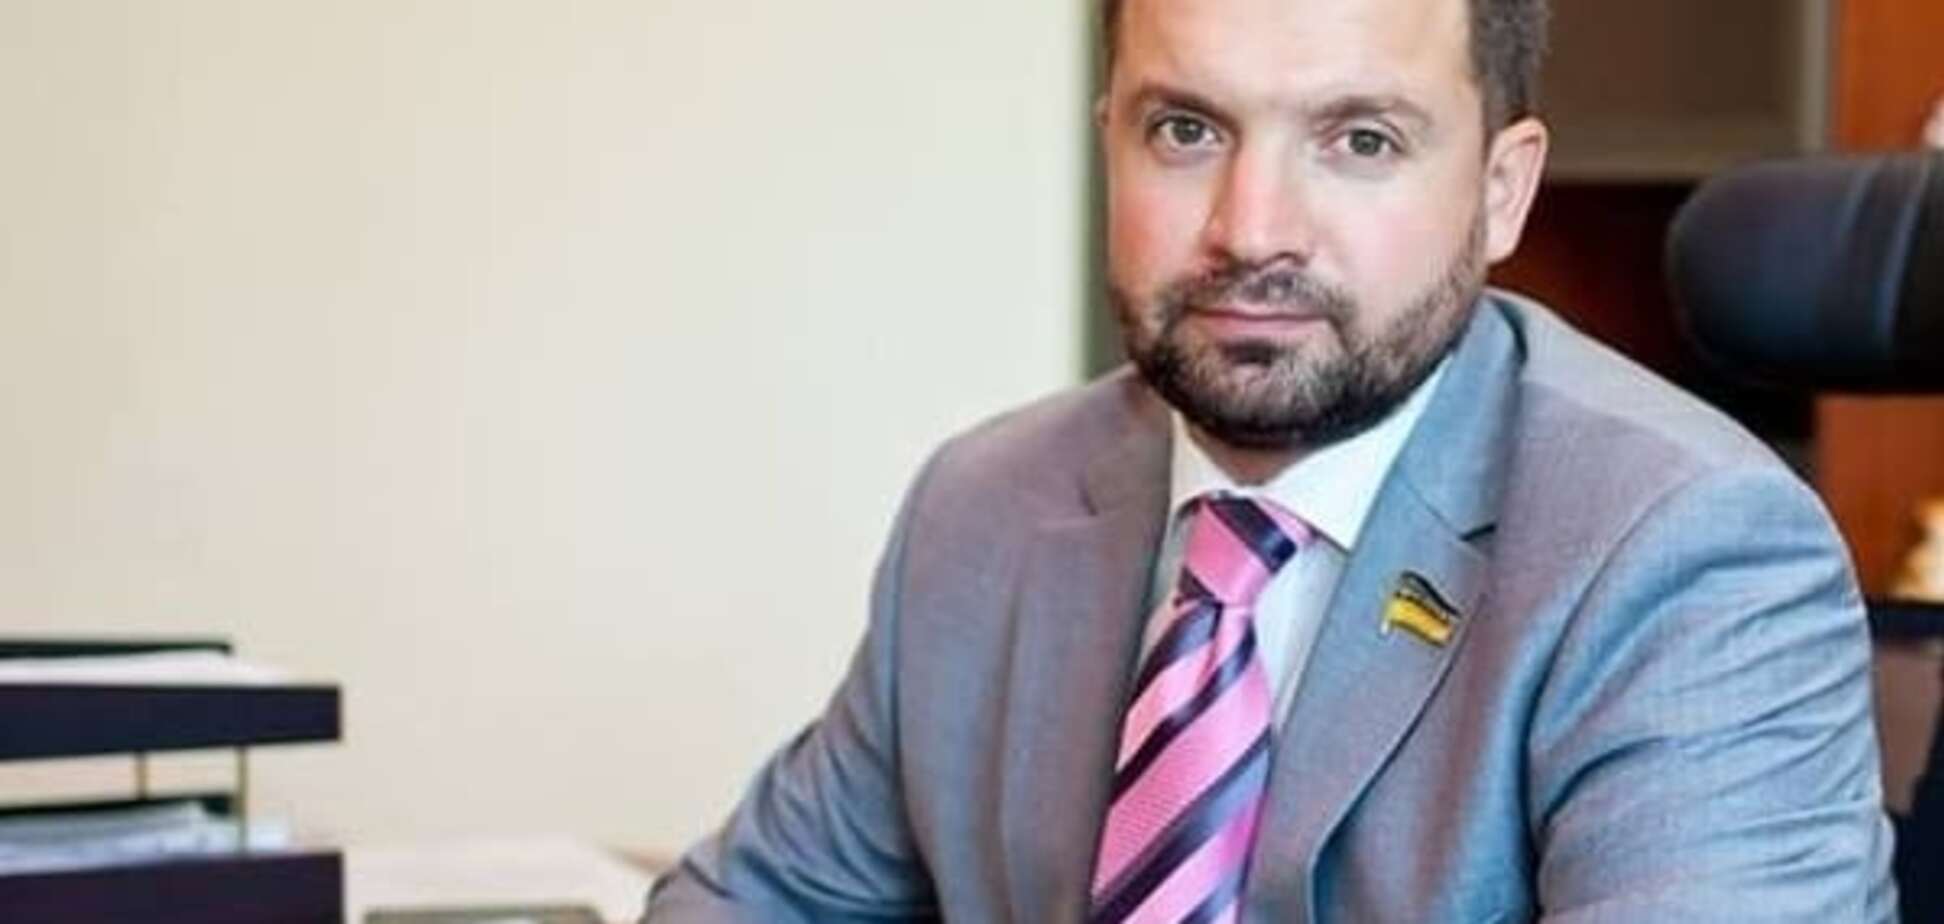 Застрелился чиновник-депутат из Федерации футбола Украины